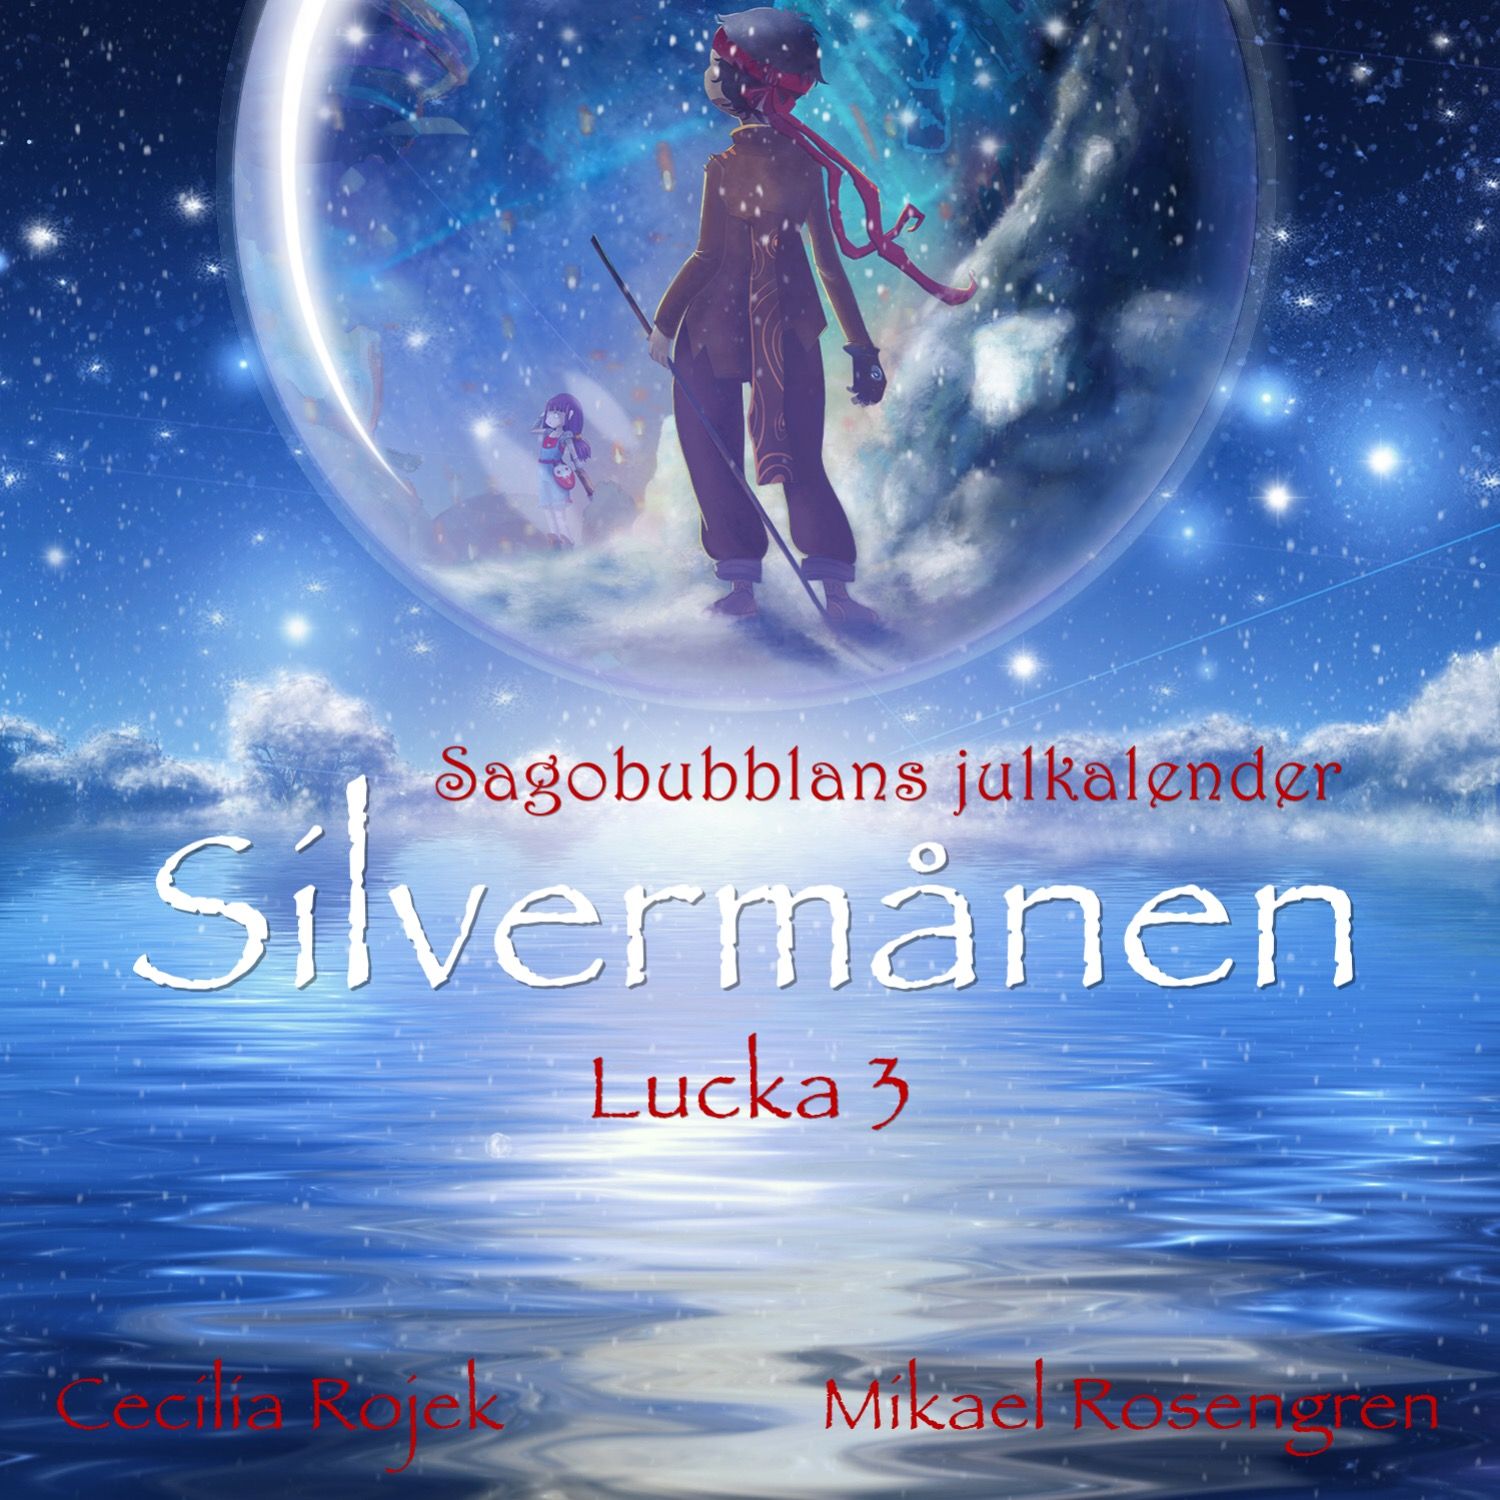 Silvermånen : Lucka 3, ljudbok av Cecilia Rojek, Mikael Rosengren